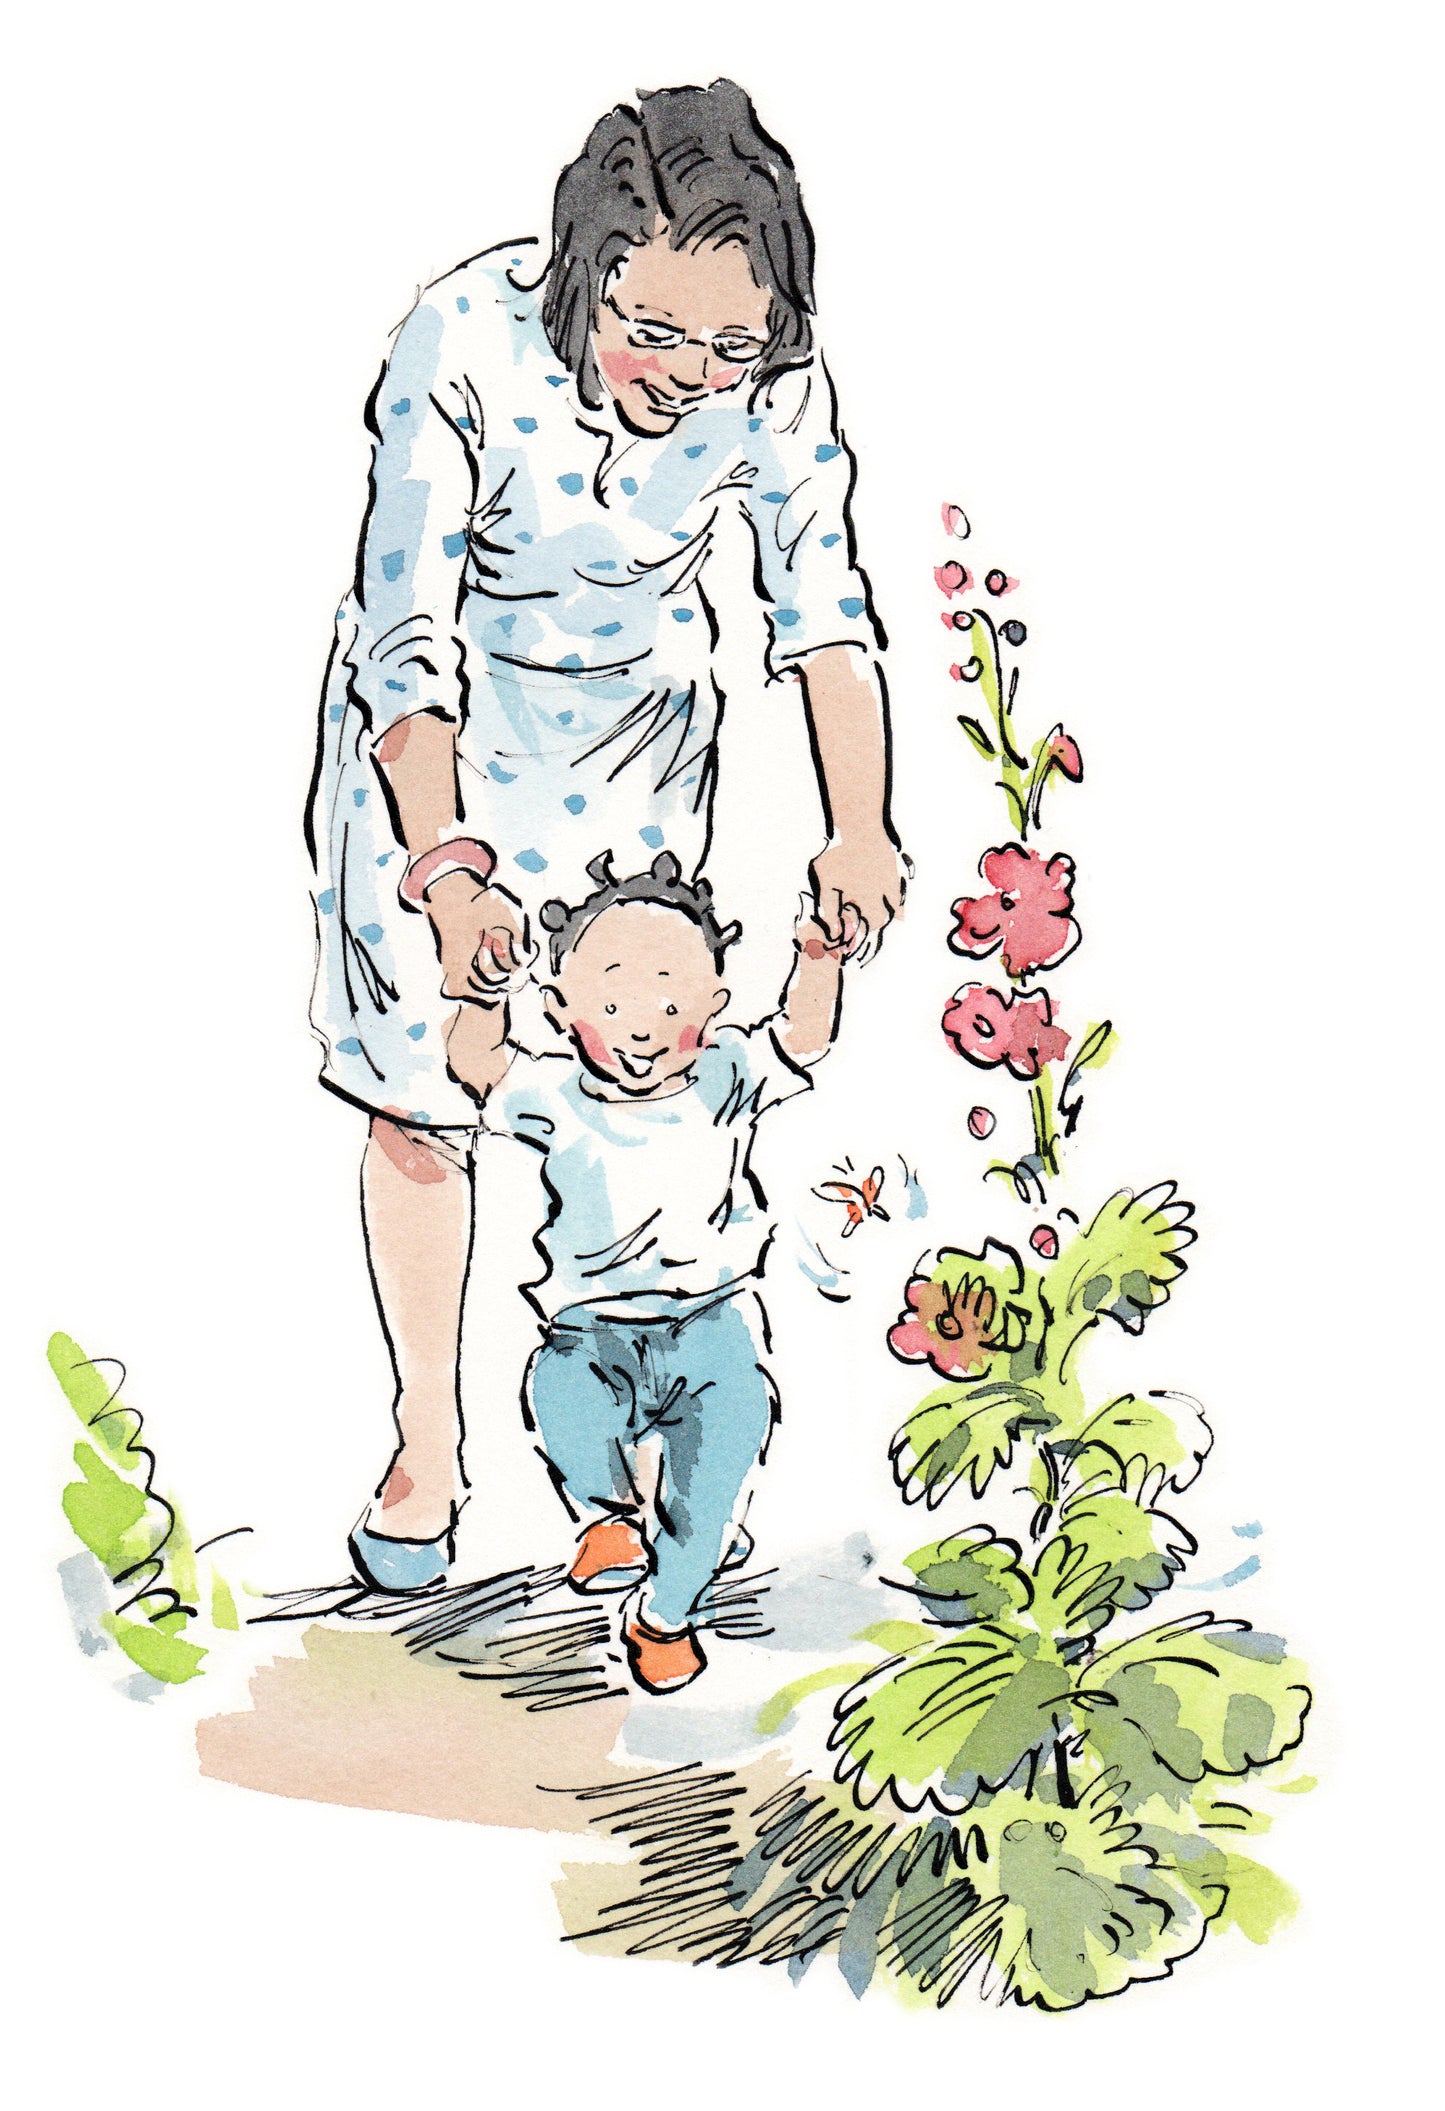 Image 118: Baby Walking